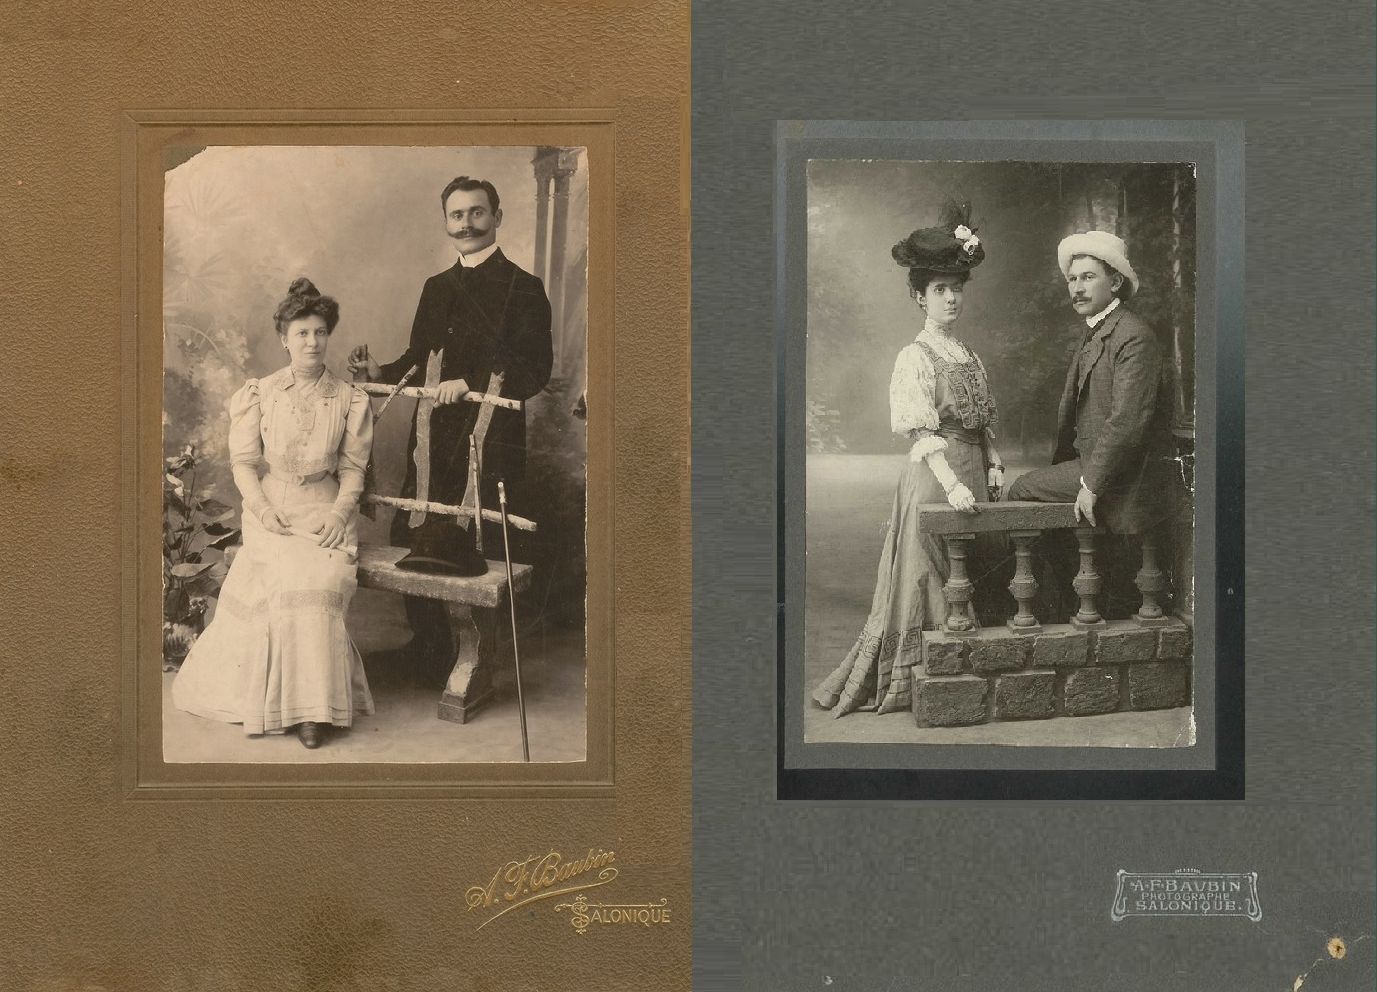 Τα εικονιζόμενα ζευγάρια στη φωτογραφία παντρεύτηκαν το ίδιο έτος, το 1906. Ήταν ο 28χρονος Ανρί Φαρατζή και η 22χρονη Ματθίλδη Μαλλάχ από τη μια, ο 31χρονος Νικόλαος Μάνος και η 26χρονη Ιωάννα Ξανθίδου από την άλλη.